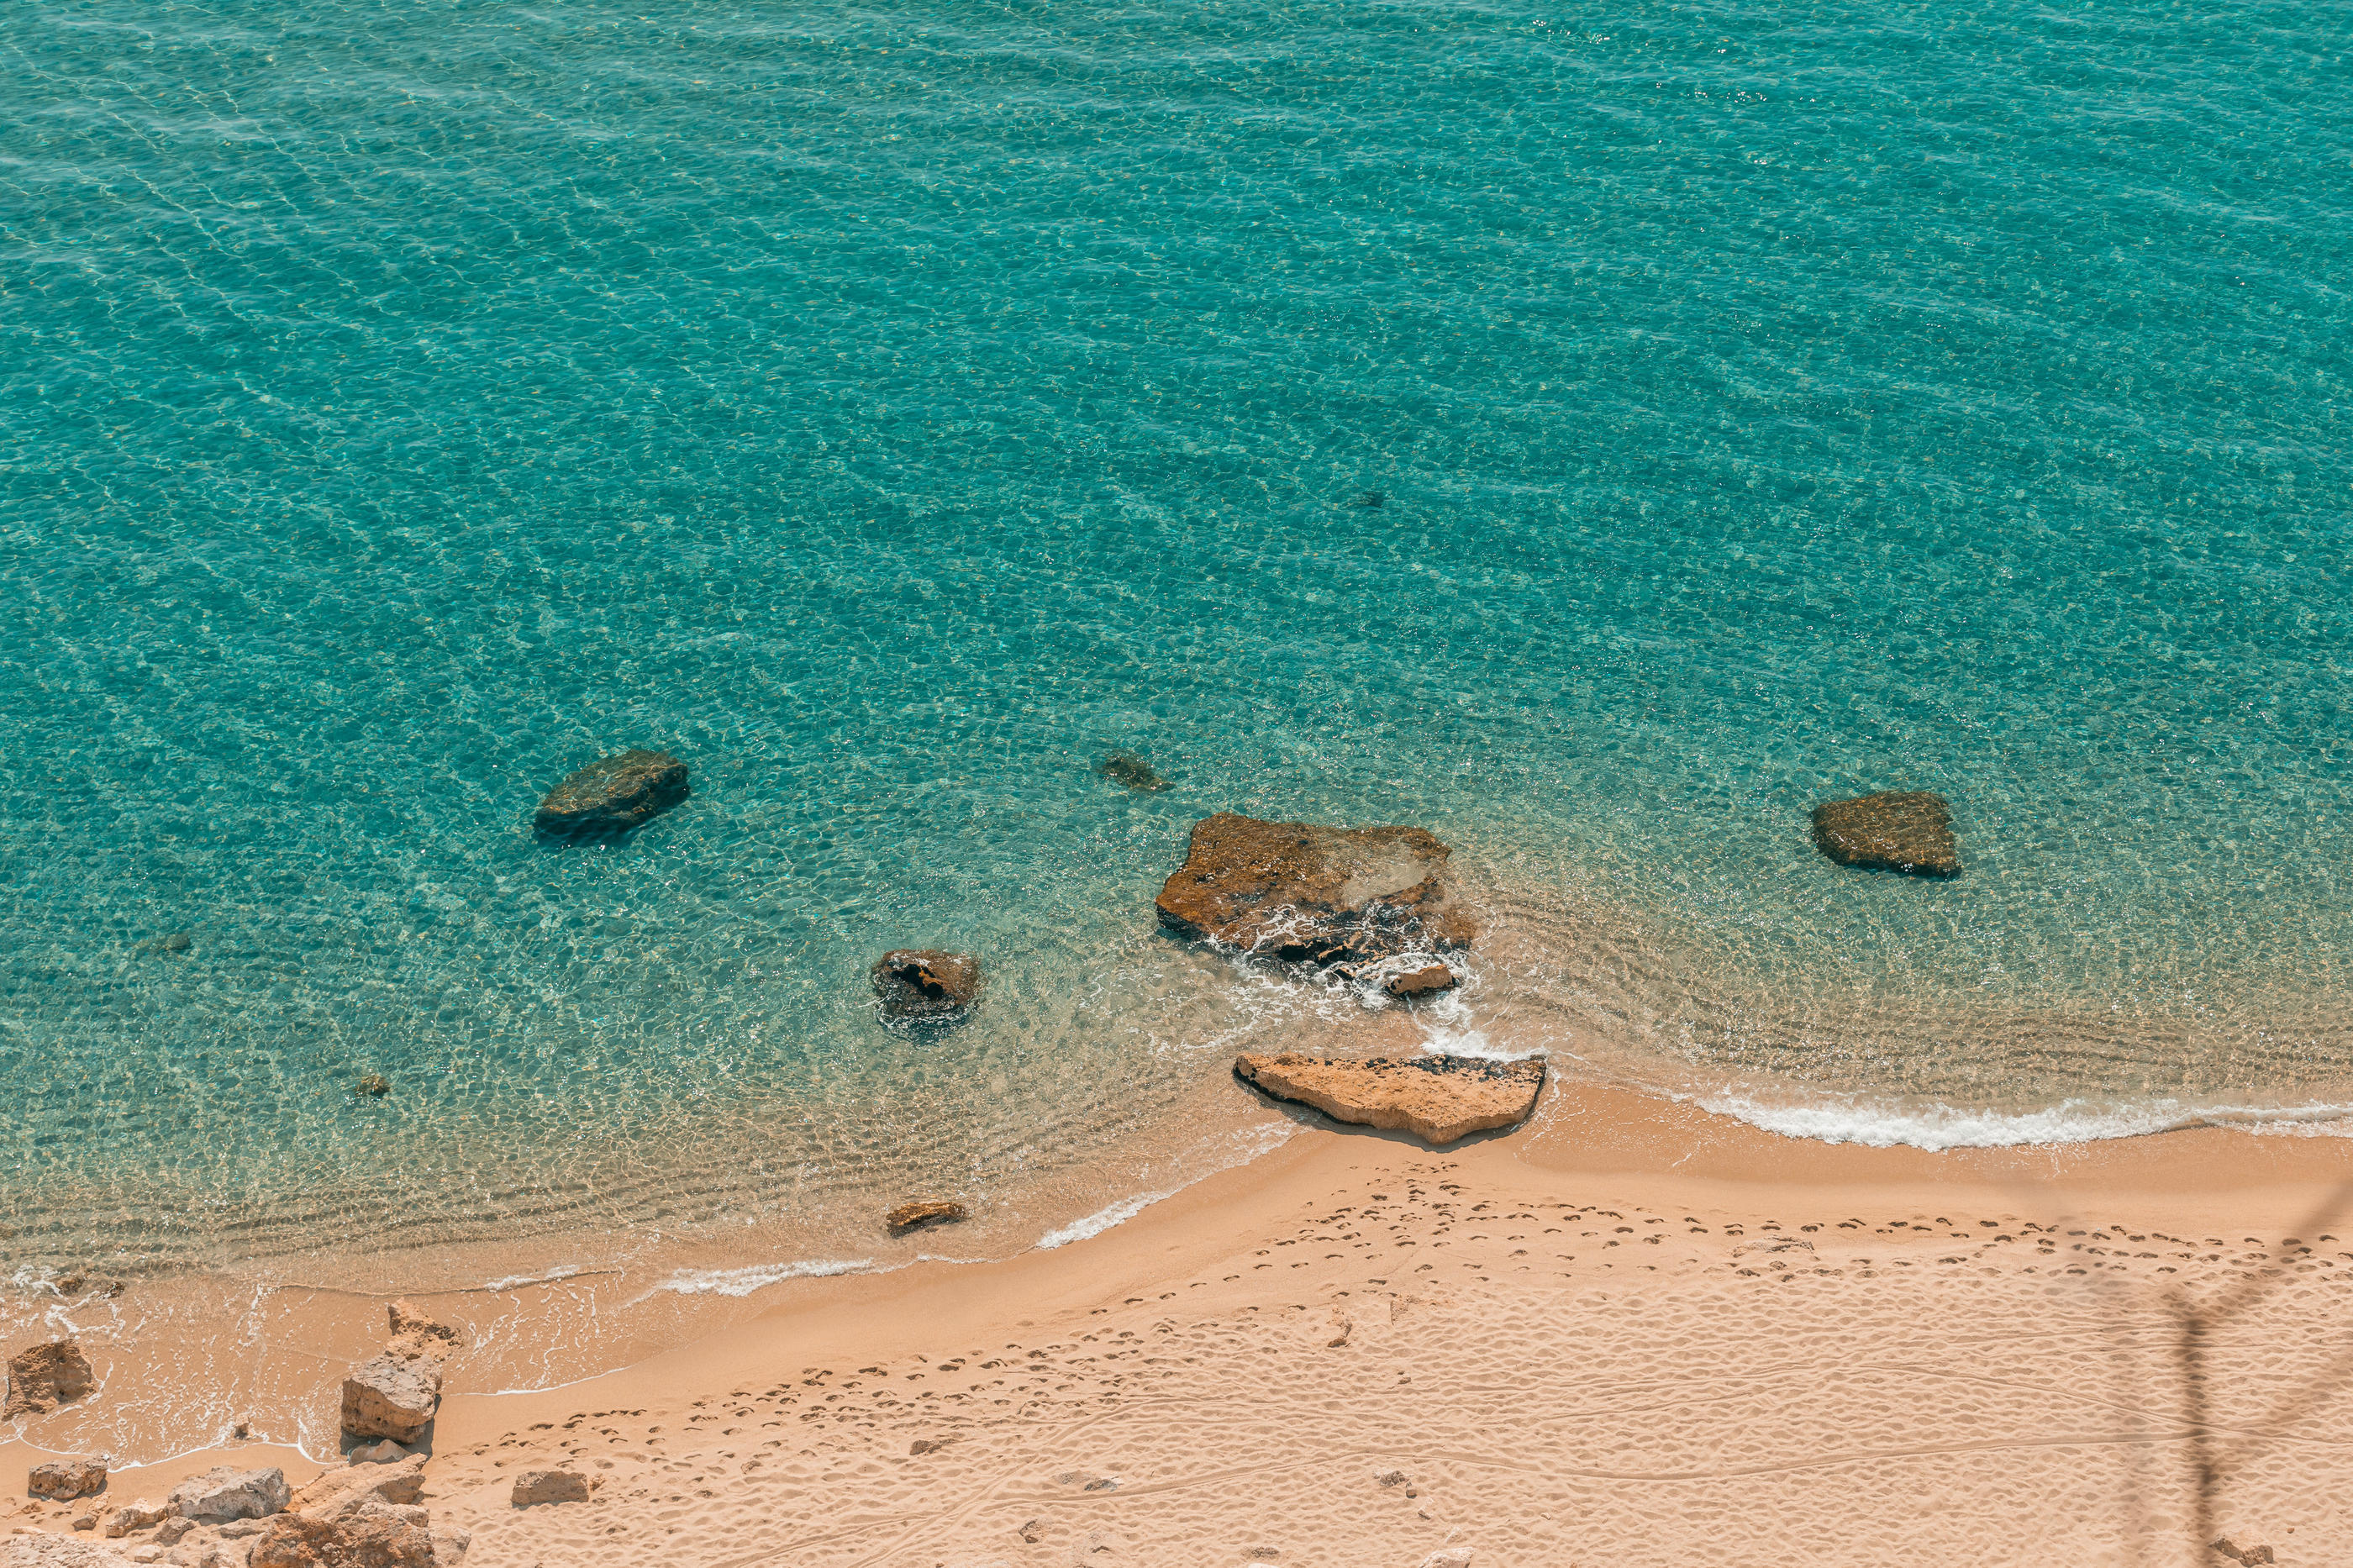 La France est bordée de plages splendides, que les vacanciers ne connaissent pas toujours. Ici, la plagette à Leucate, dans l'Aude. Leucate tourisme/Nicolas Strzempa